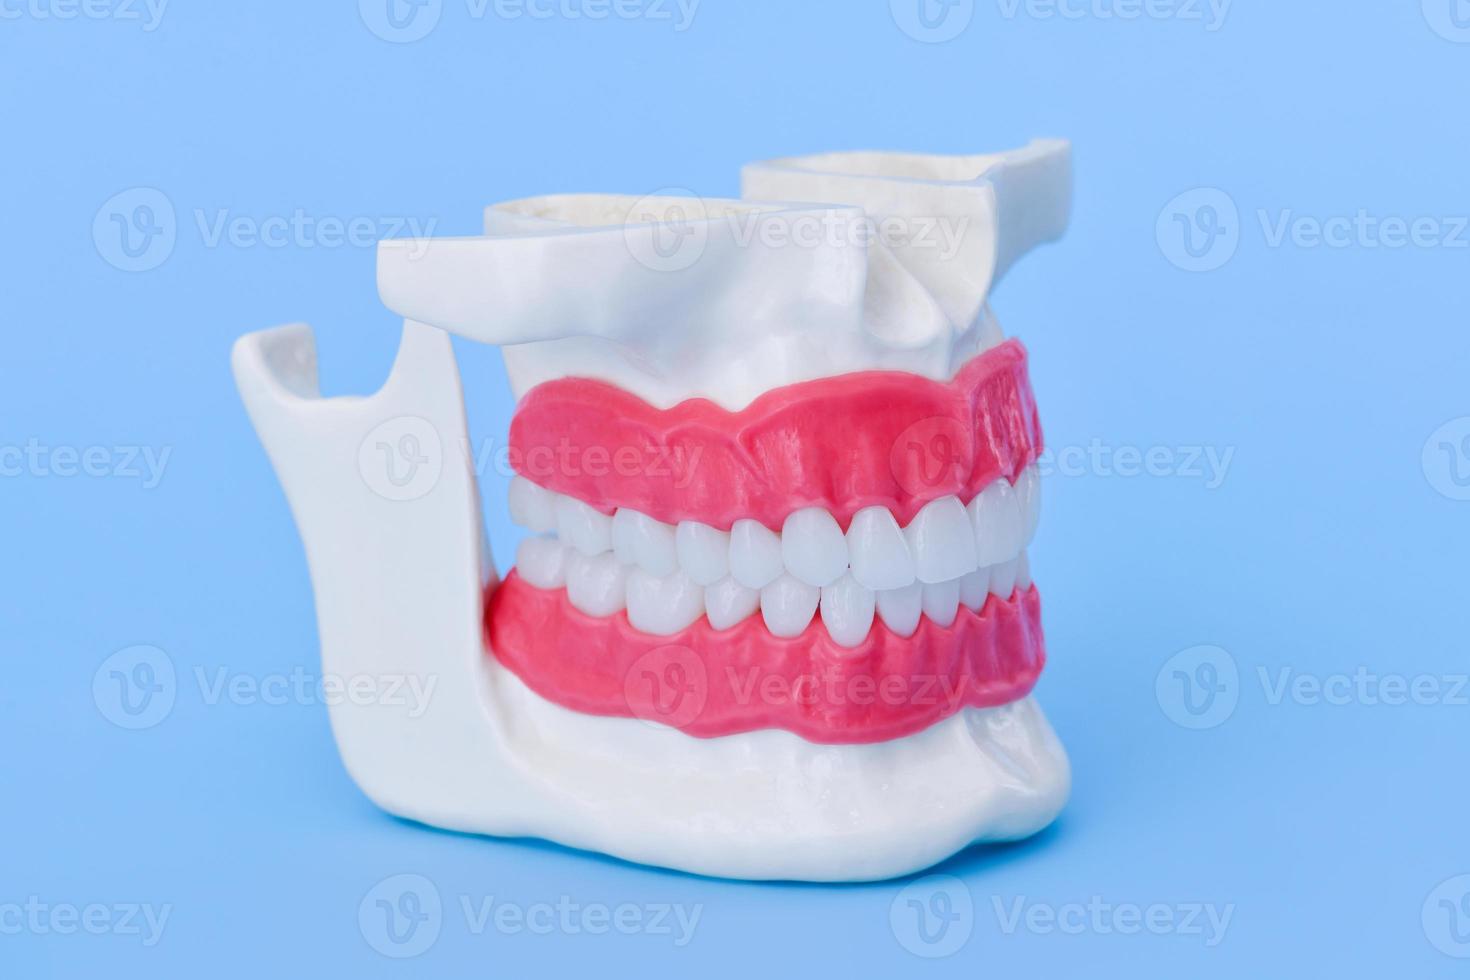 menselijk kaak met tanden en tandvlees anatomie model- foto